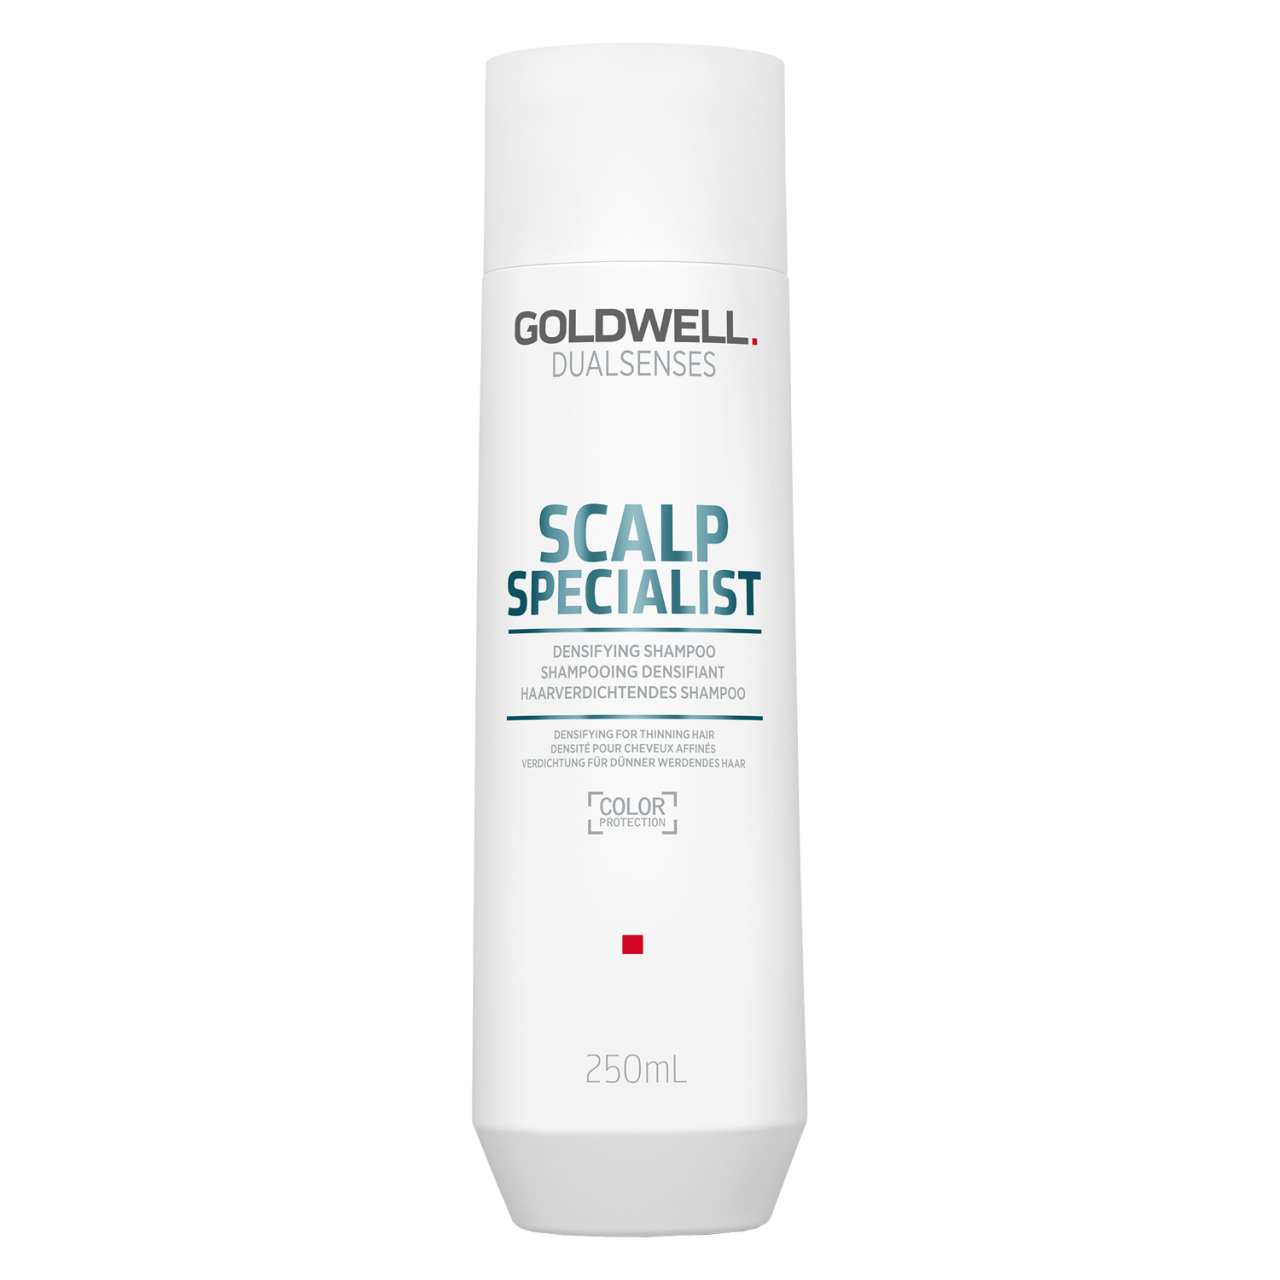 Dualsenses Scalp Specialist - Densifying Shampoo von Goldwell